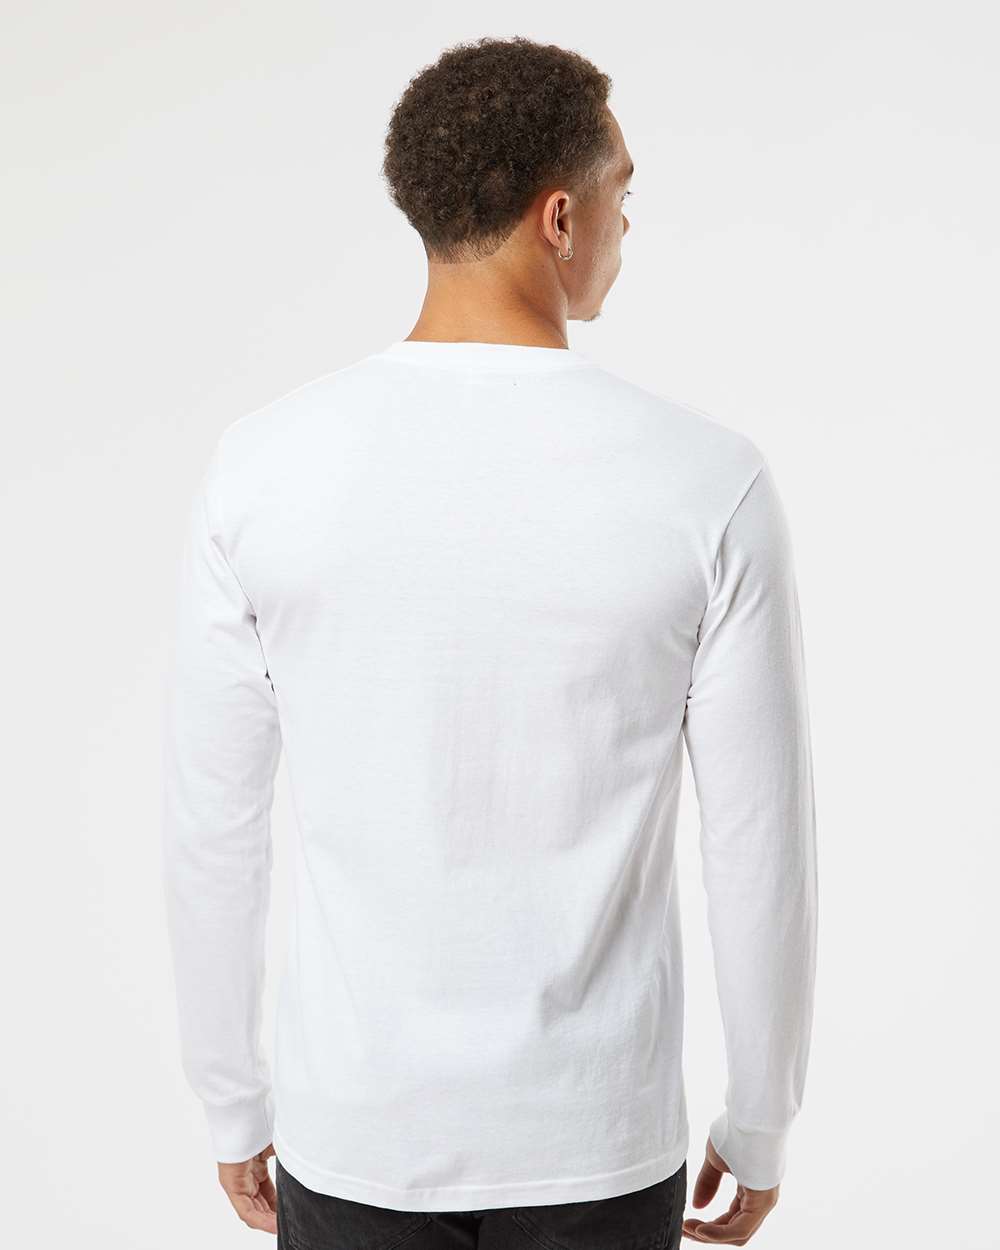 Next Level 1801 - Heavyweight Long Sleeve T-Shirt